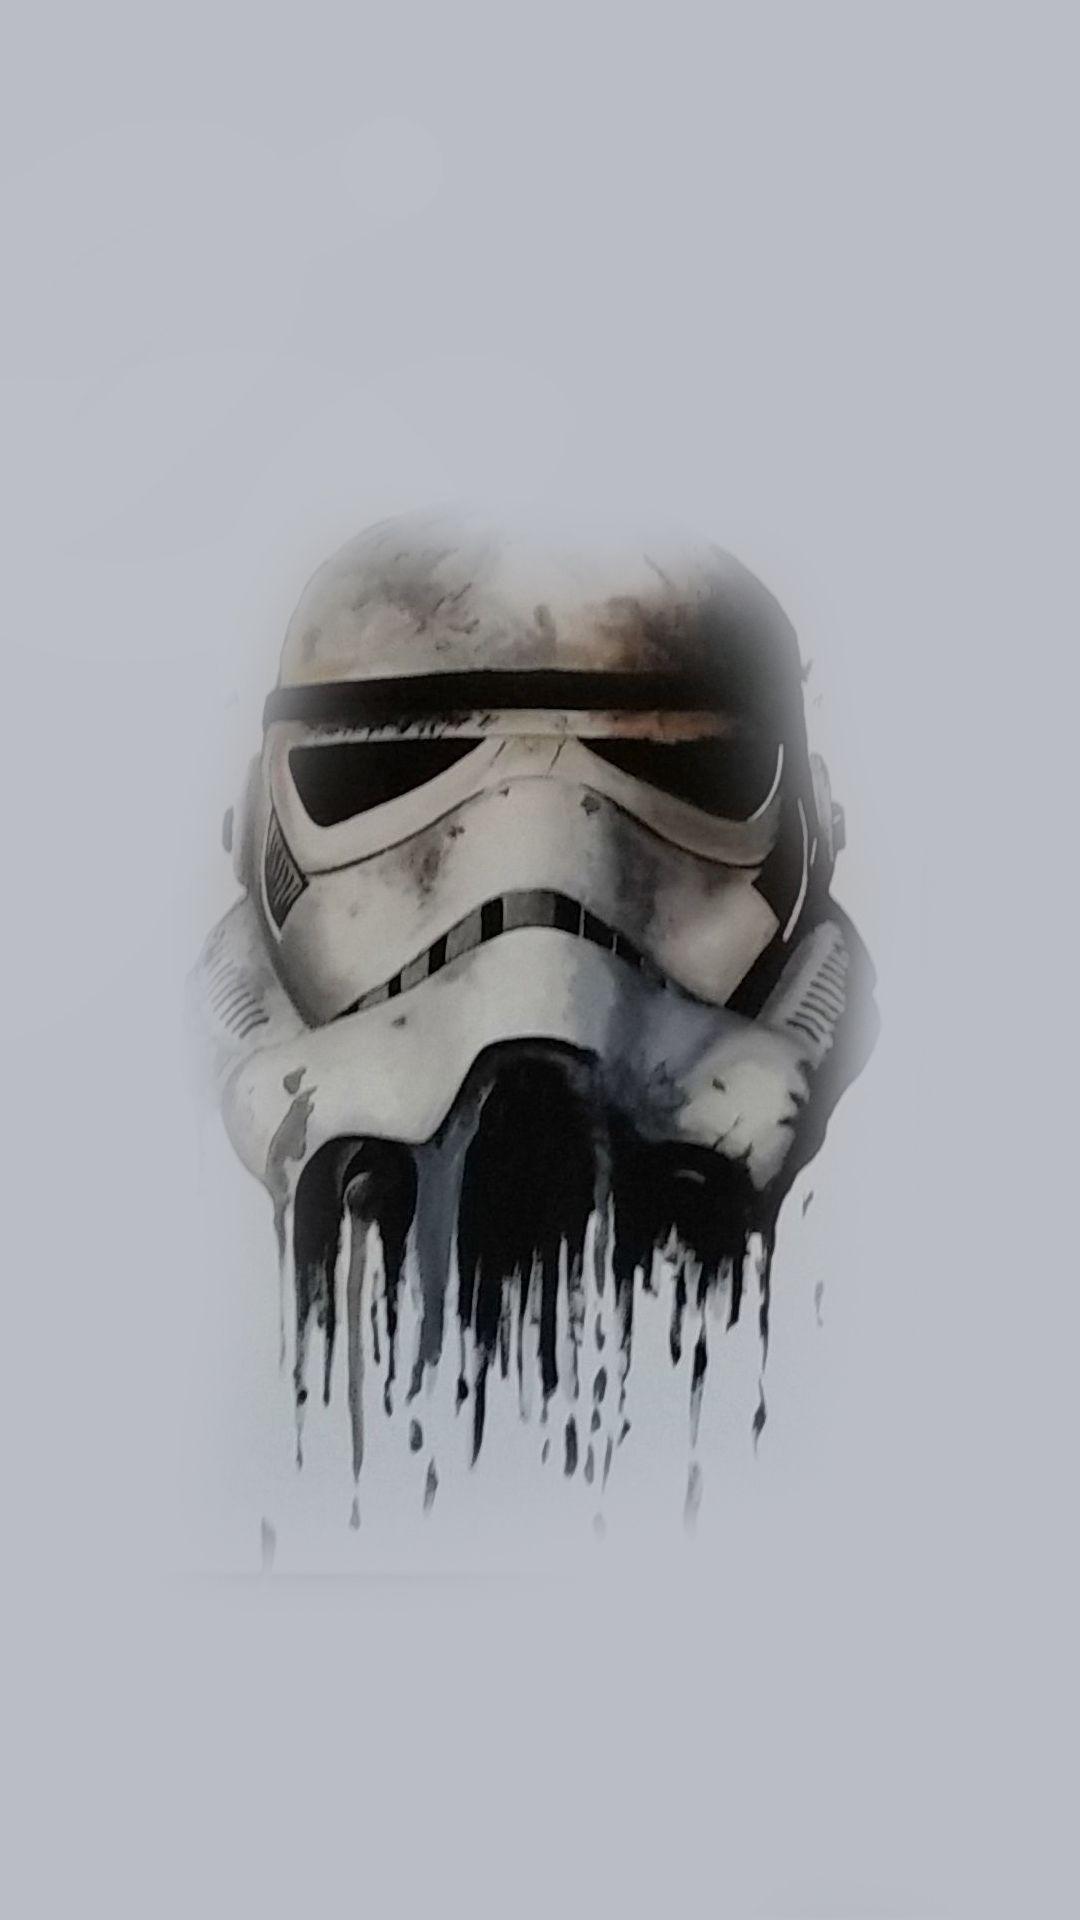 Stormtrooper Helmet. Star wars wallpaper, Star wars poster, Star wars tattoo